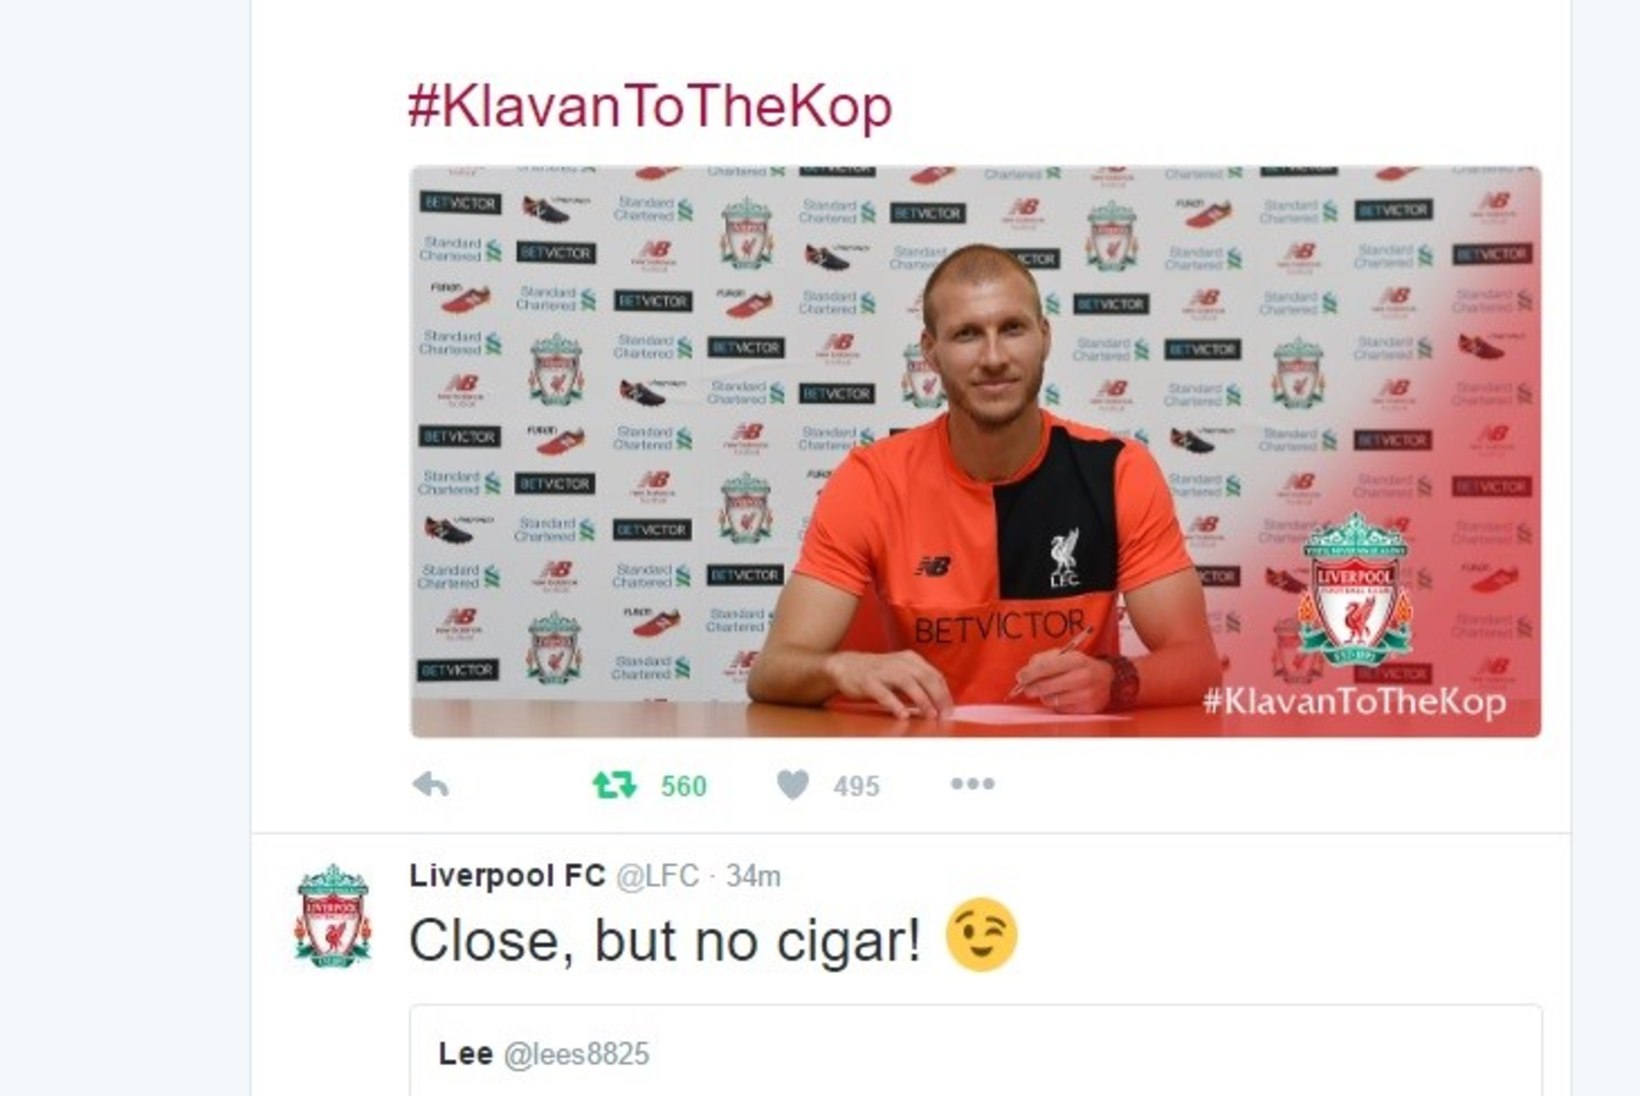 Liverpool viskas Klavani üleminekuga seoses Twitteris väikese nalja